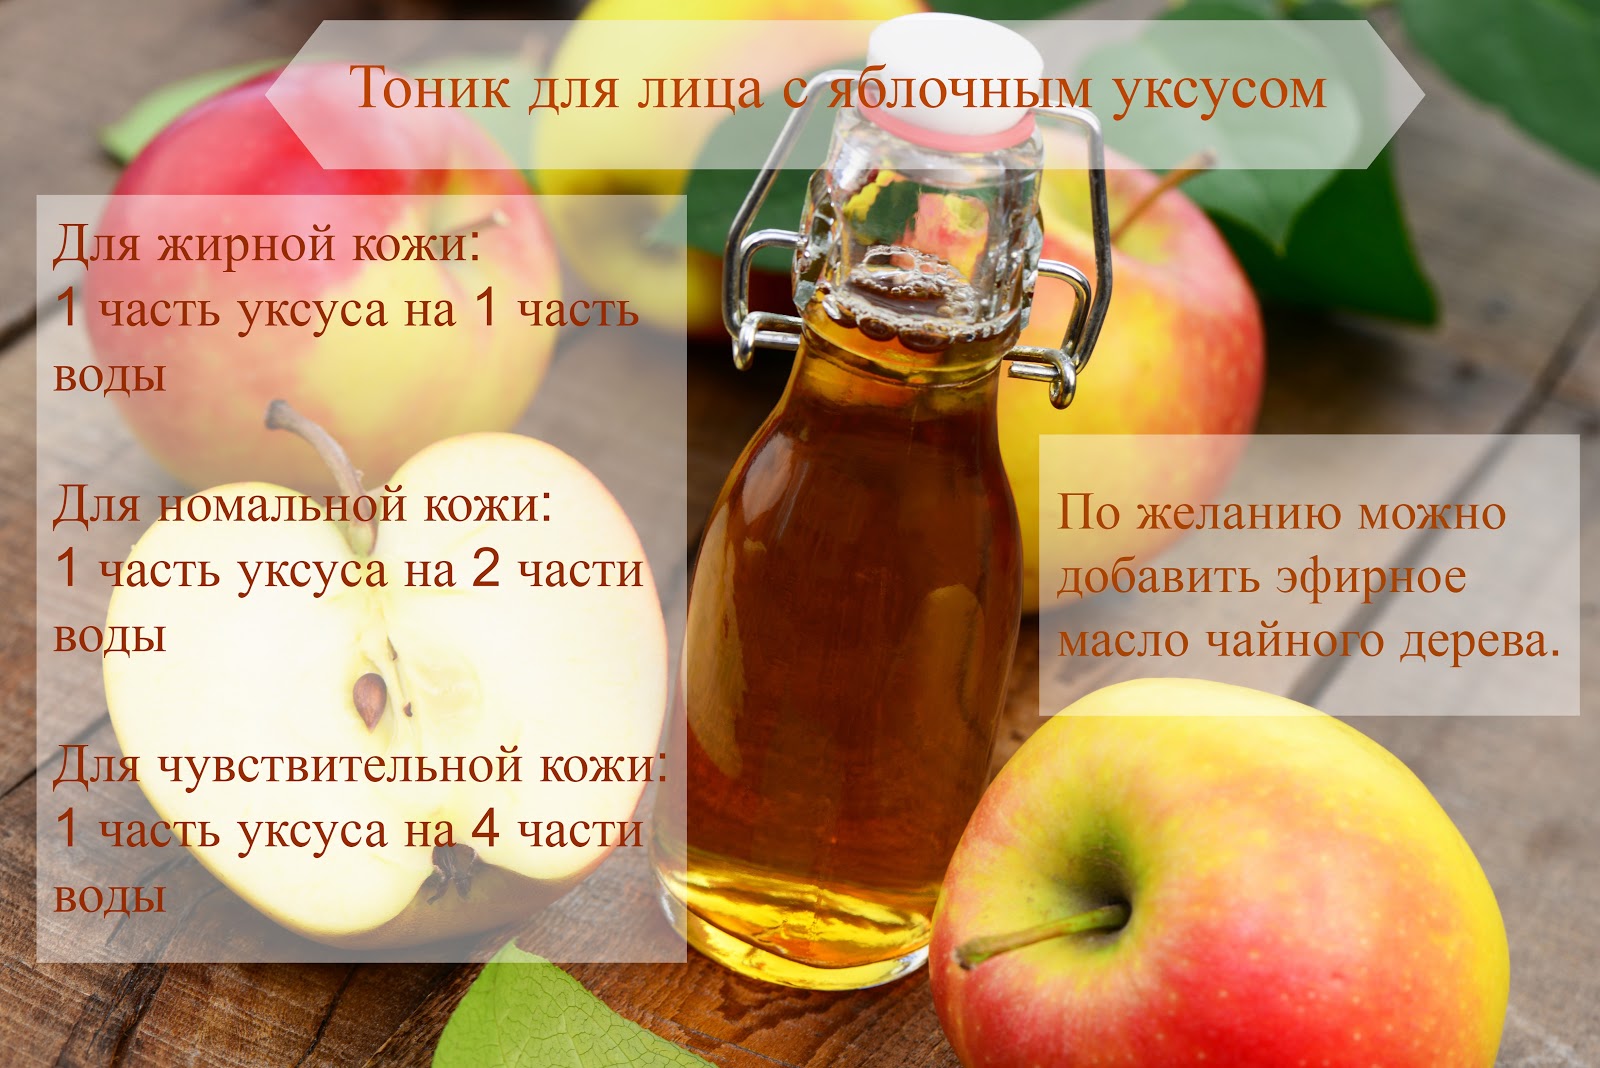 Яблочный уксус: состав, полезные свойства и способы применения